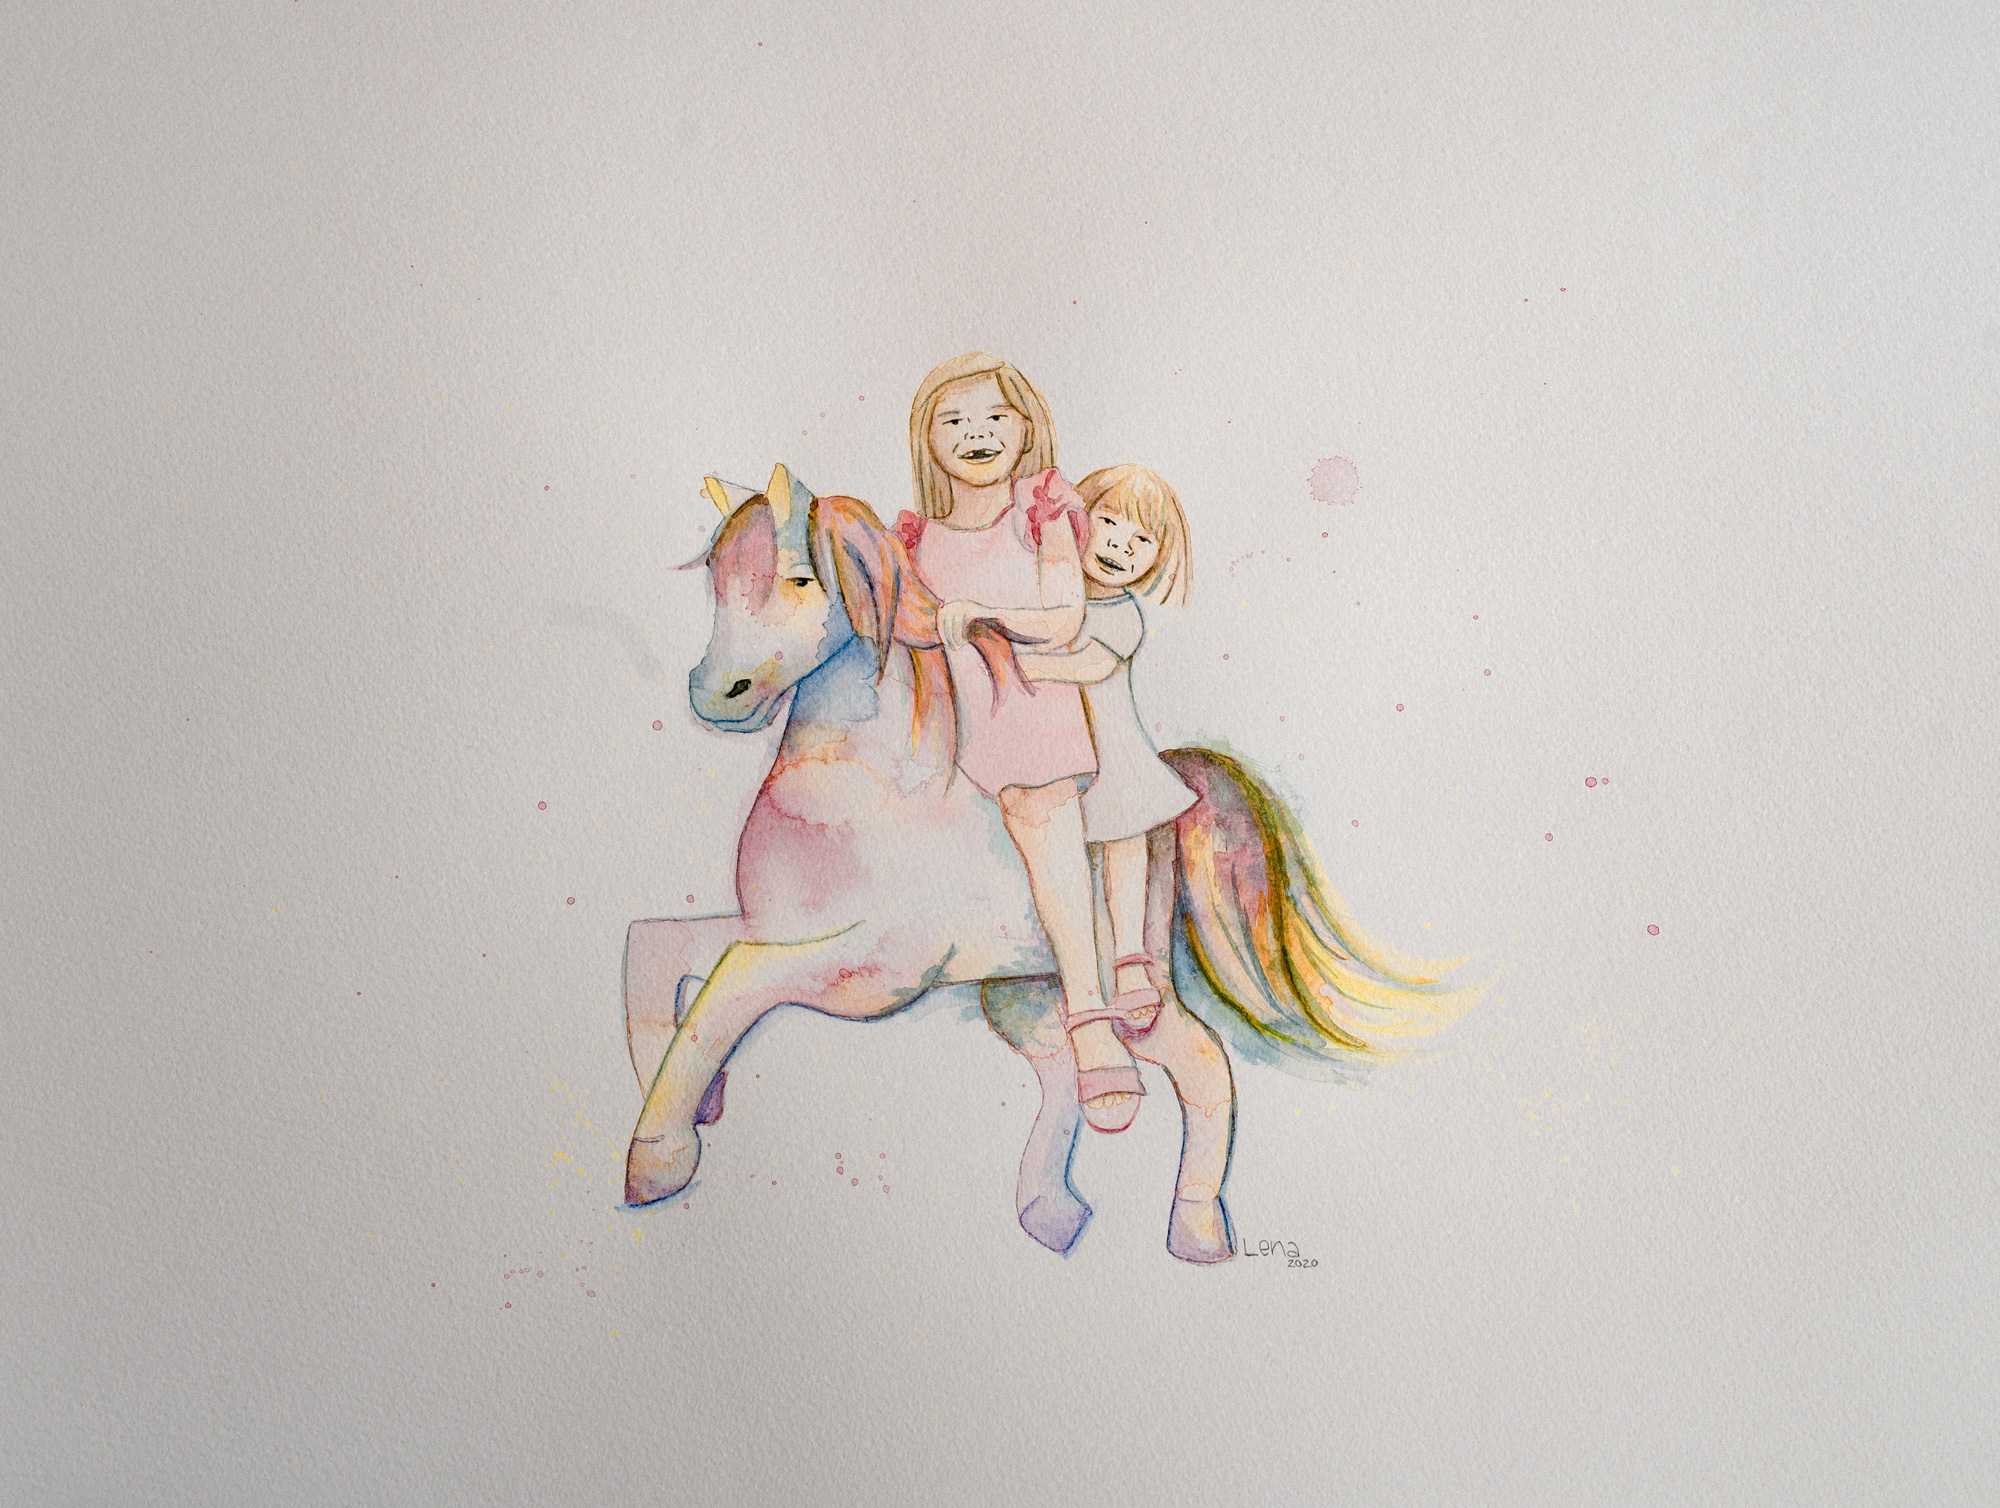 Aquarellbild, das zwei Kinder zeigt, die auf einem bunten Pferd reten.